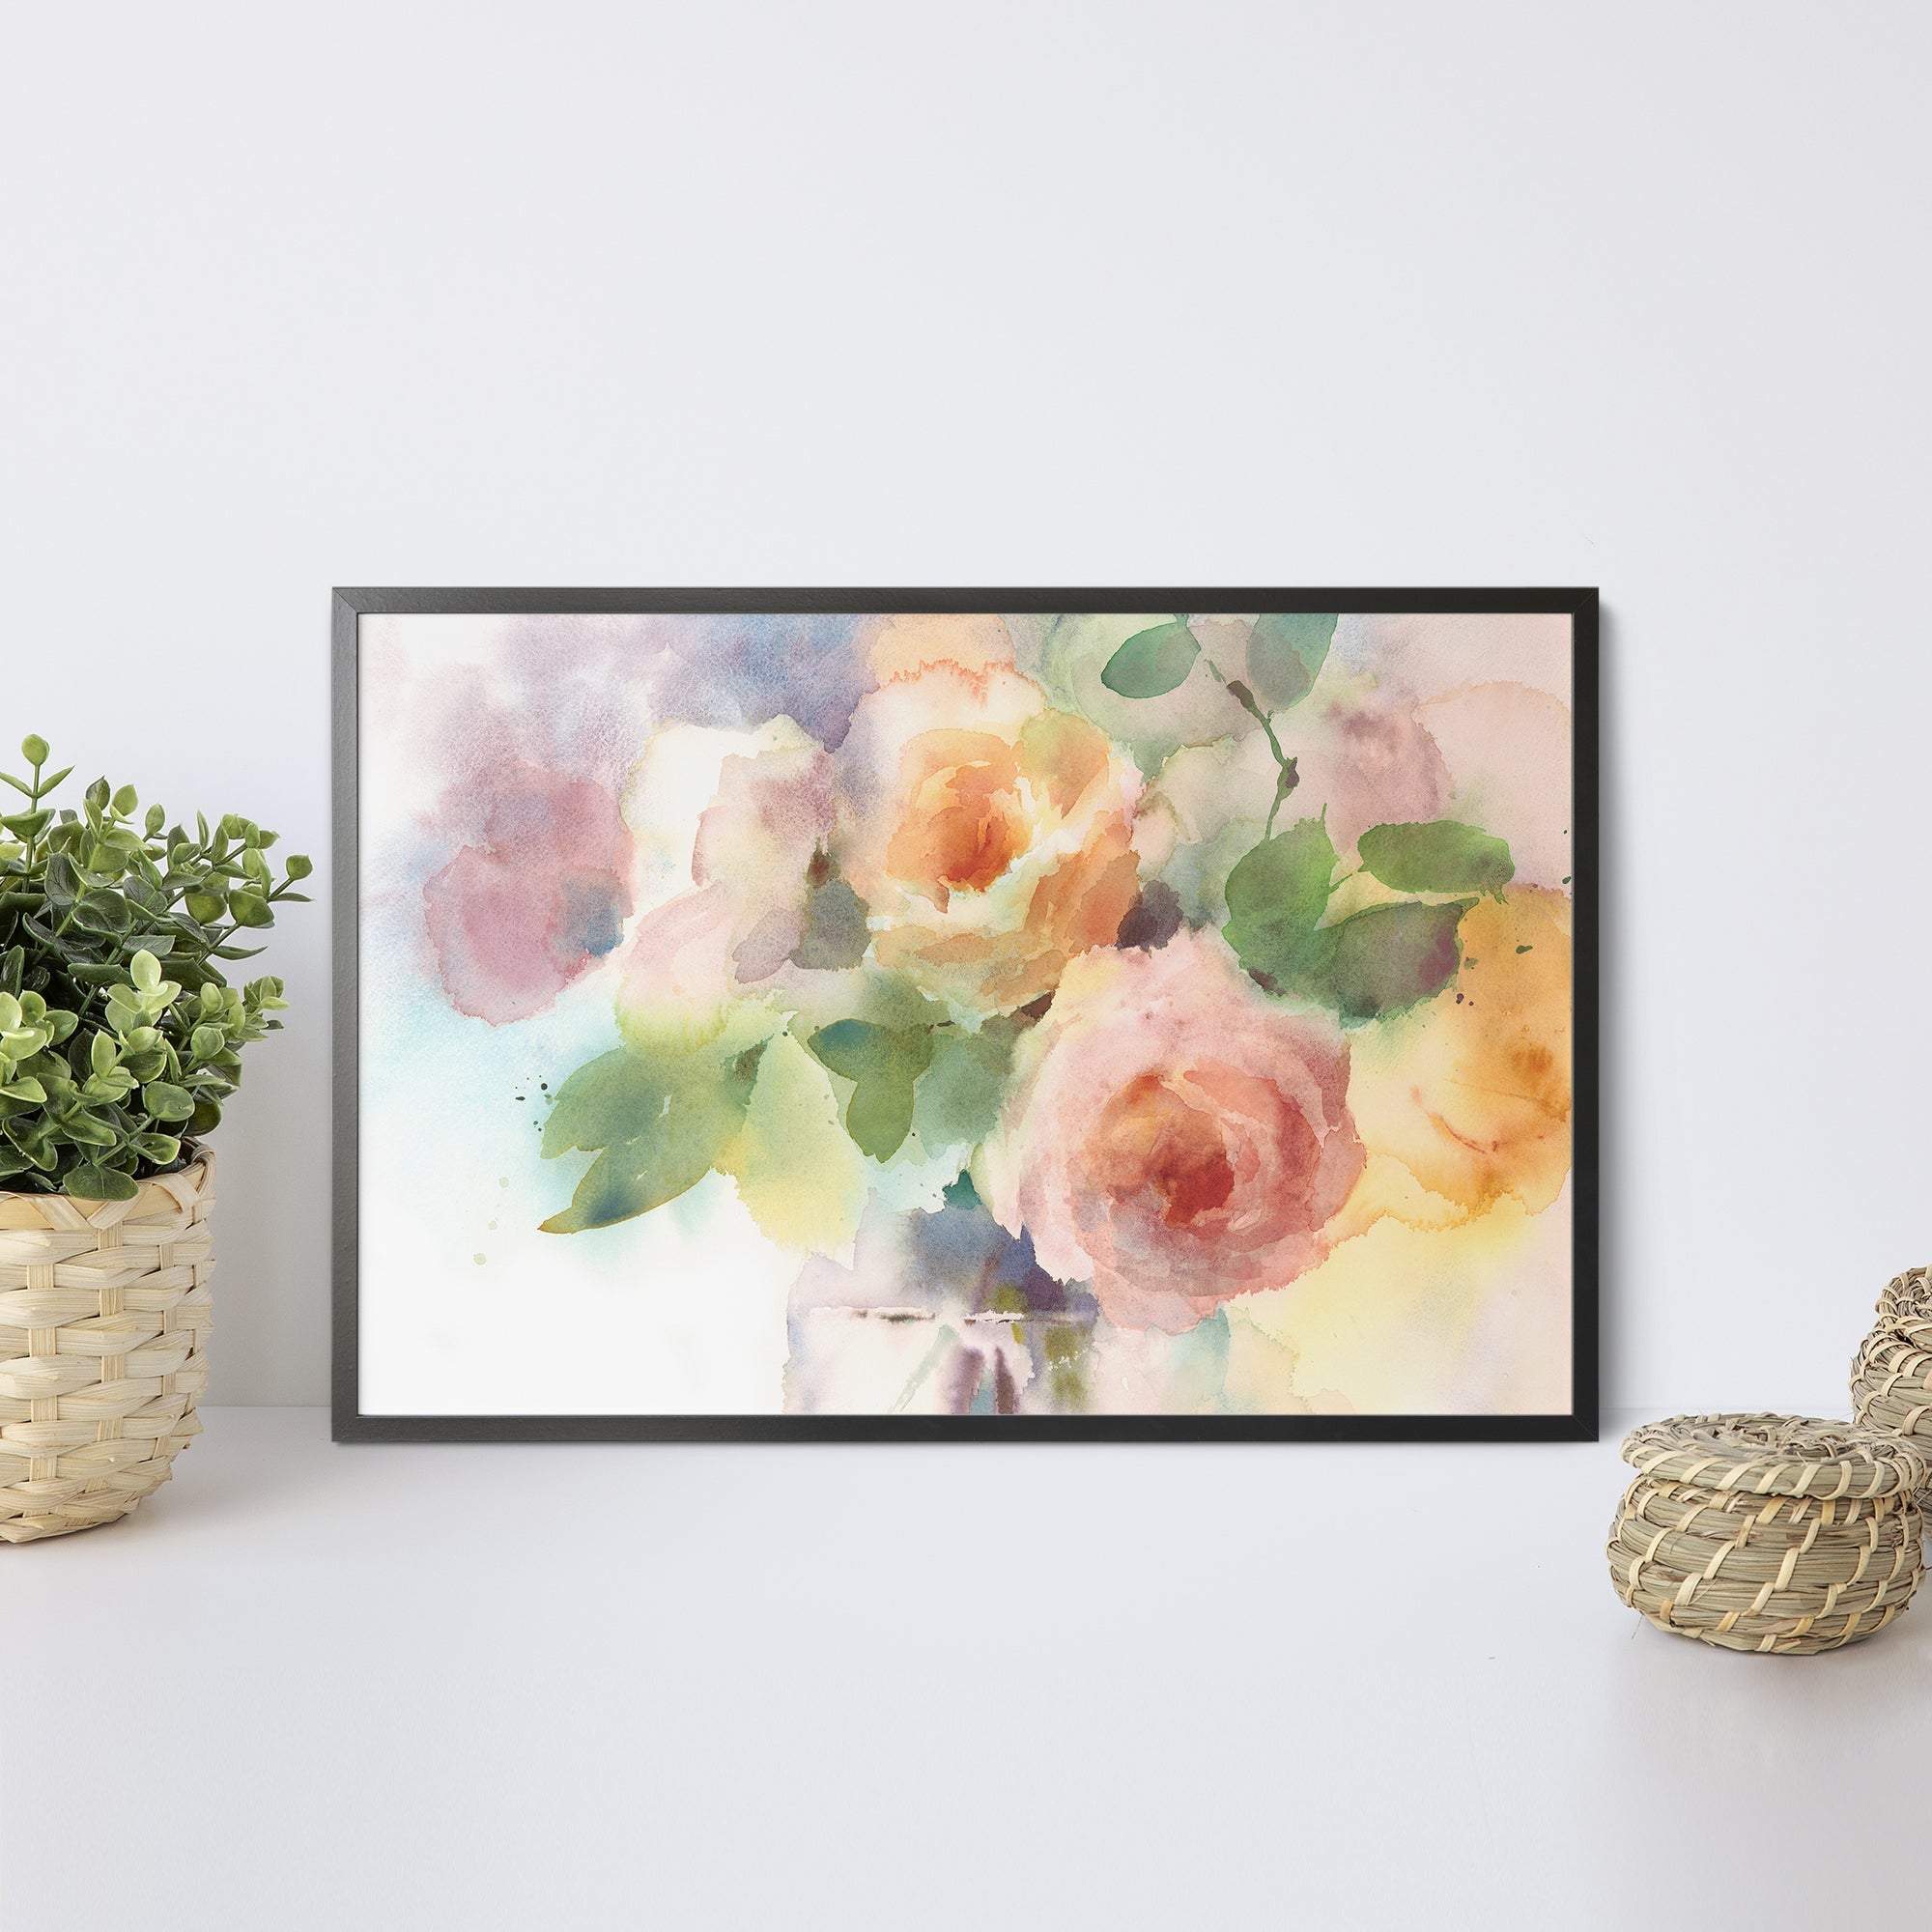 Foto obraz w ramie - Akwarela, róże w wazonie (kolorowy) - Gallart.pl